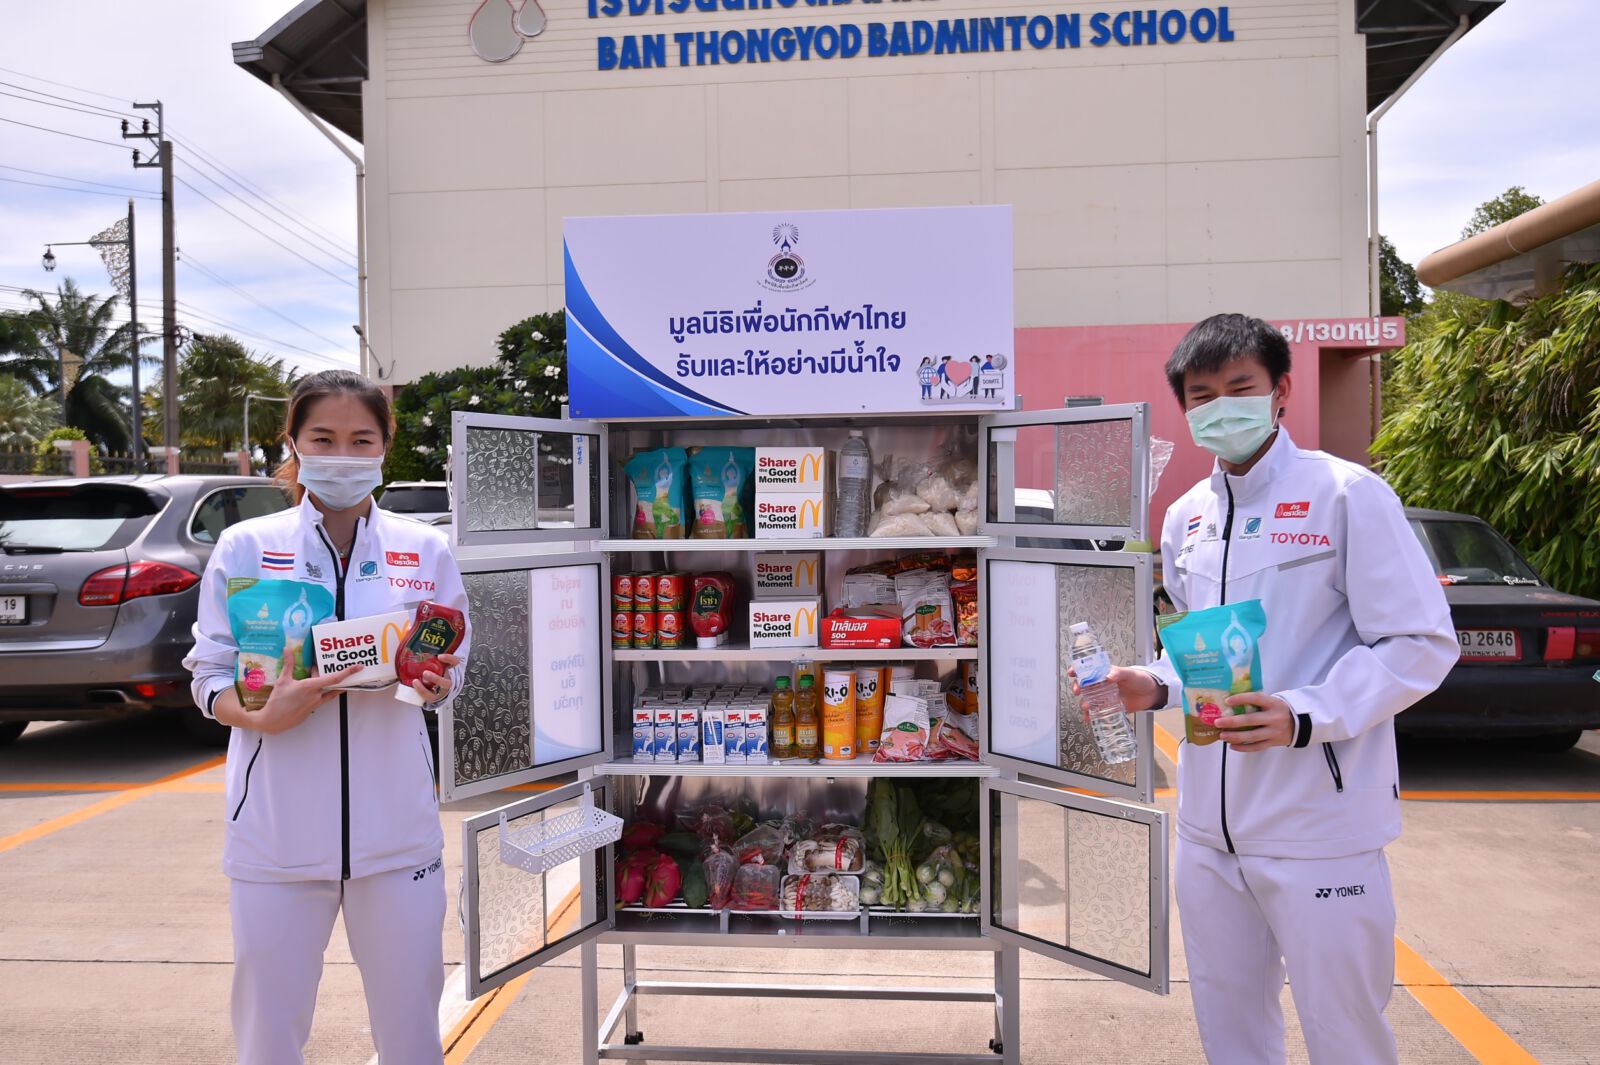 “เมย์-วิว” ร่วมกับ มูลนิธิเพื่อนักกีฬาไทย เปิด “ตู้ปันสุข สี่มุมเมือง รับและให้อย่างมีน้ำใจ” จุดที่ 4 ของมูลนิธิเพื่อนักกีฬาไทย ที่ด้านหน้าโรงเรียนแบดมินตันบ้านทองหยอด